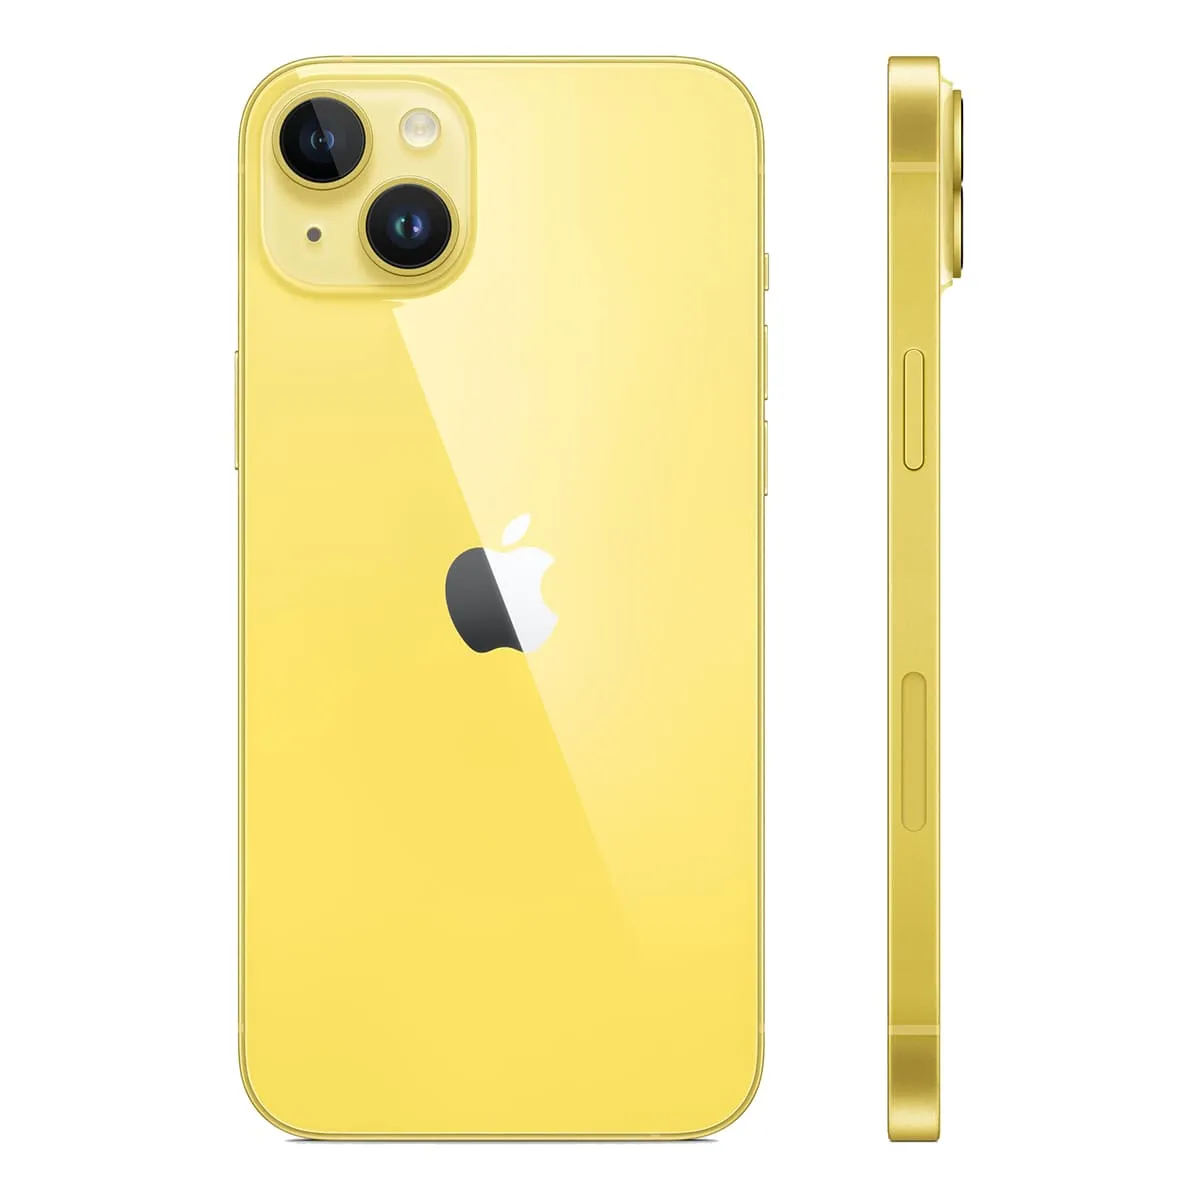 Apple iPhone 14 Plus 128Gb (Yellow) (eSIM)